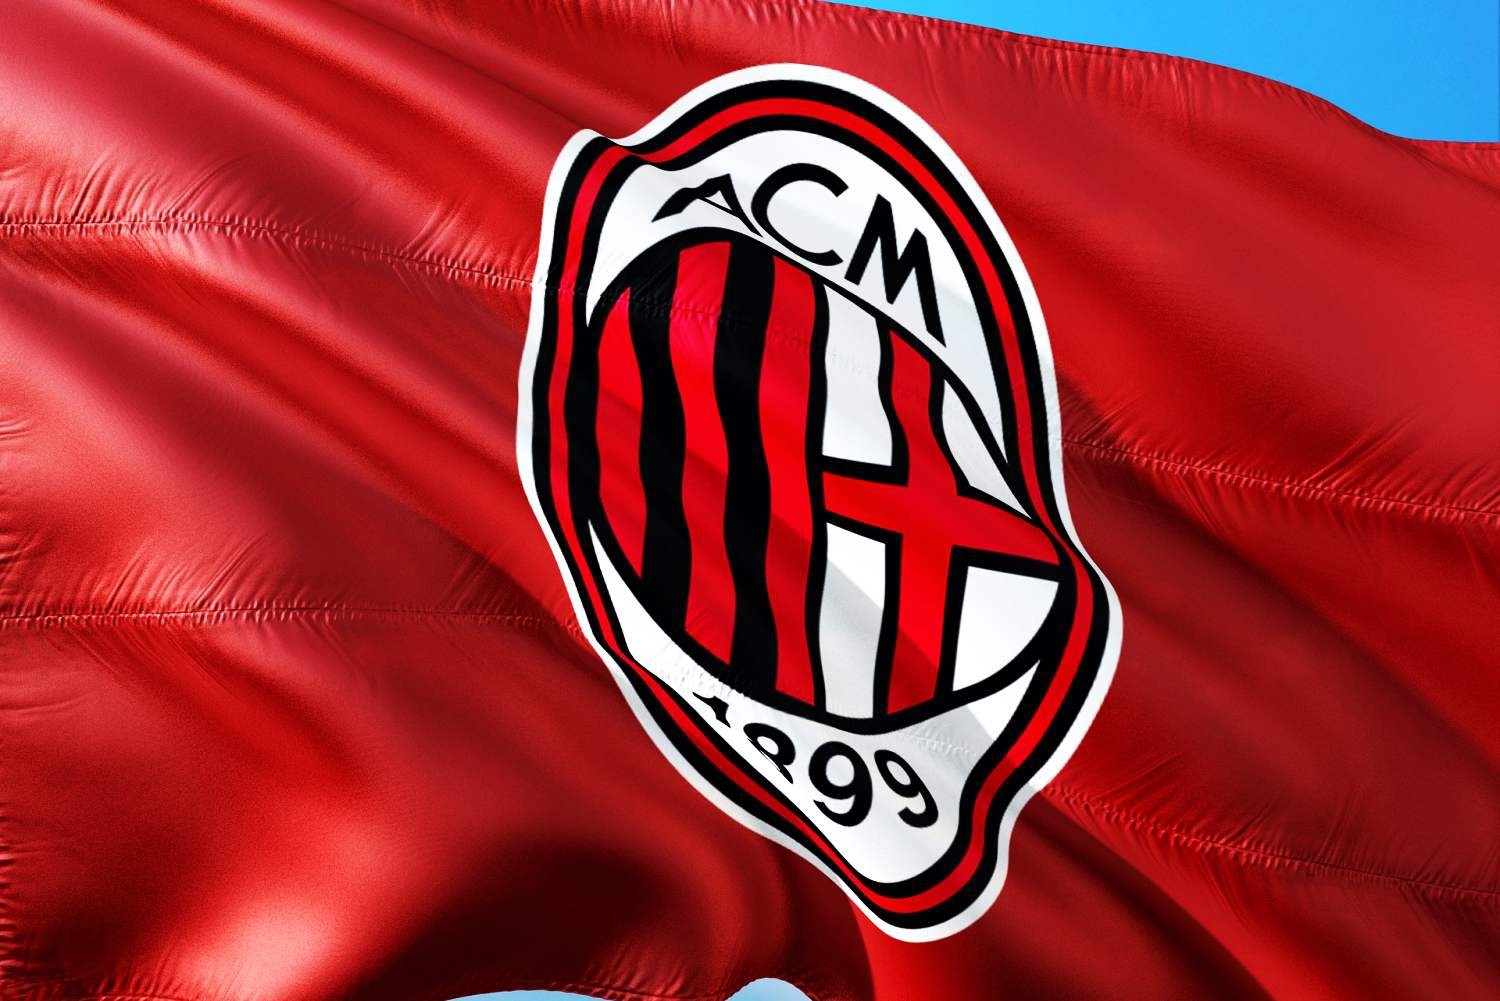 AC Milan finalizuje transfer Girouda i... na tym nie skończy. Włoski klub nie odpuszcza tematu Brazylijczyka